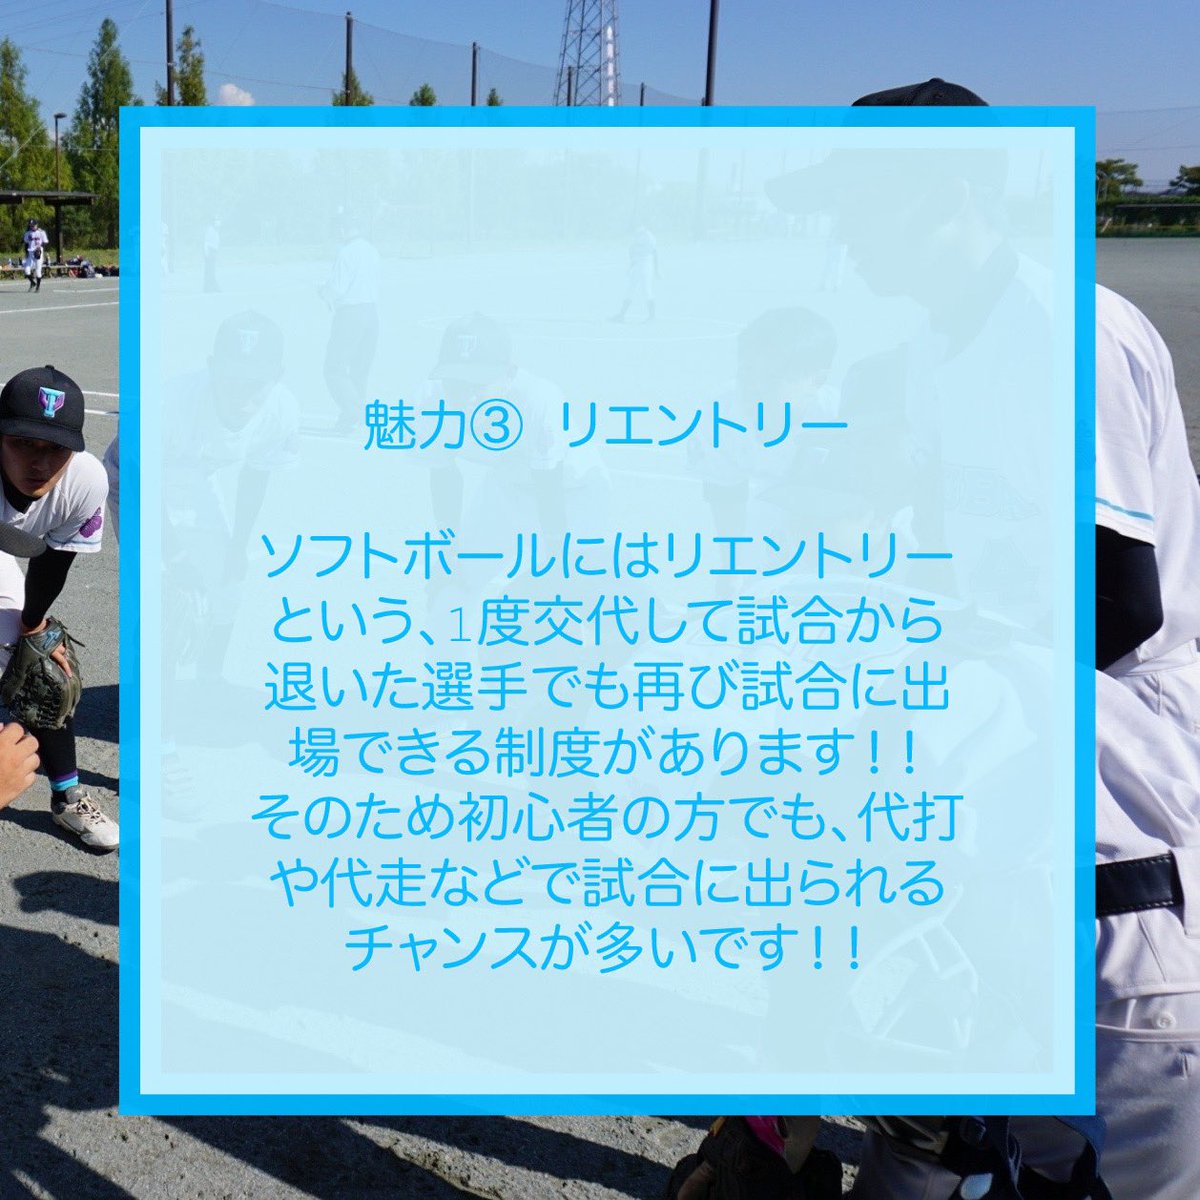 ソフトボールの魅力についての投稿です！頑張って画像4枚でまとめました😖💦
#春から筑波 #春から筑波大学 

Here's a post about the allure of softball!
#universityoftsukuba #untsukuba